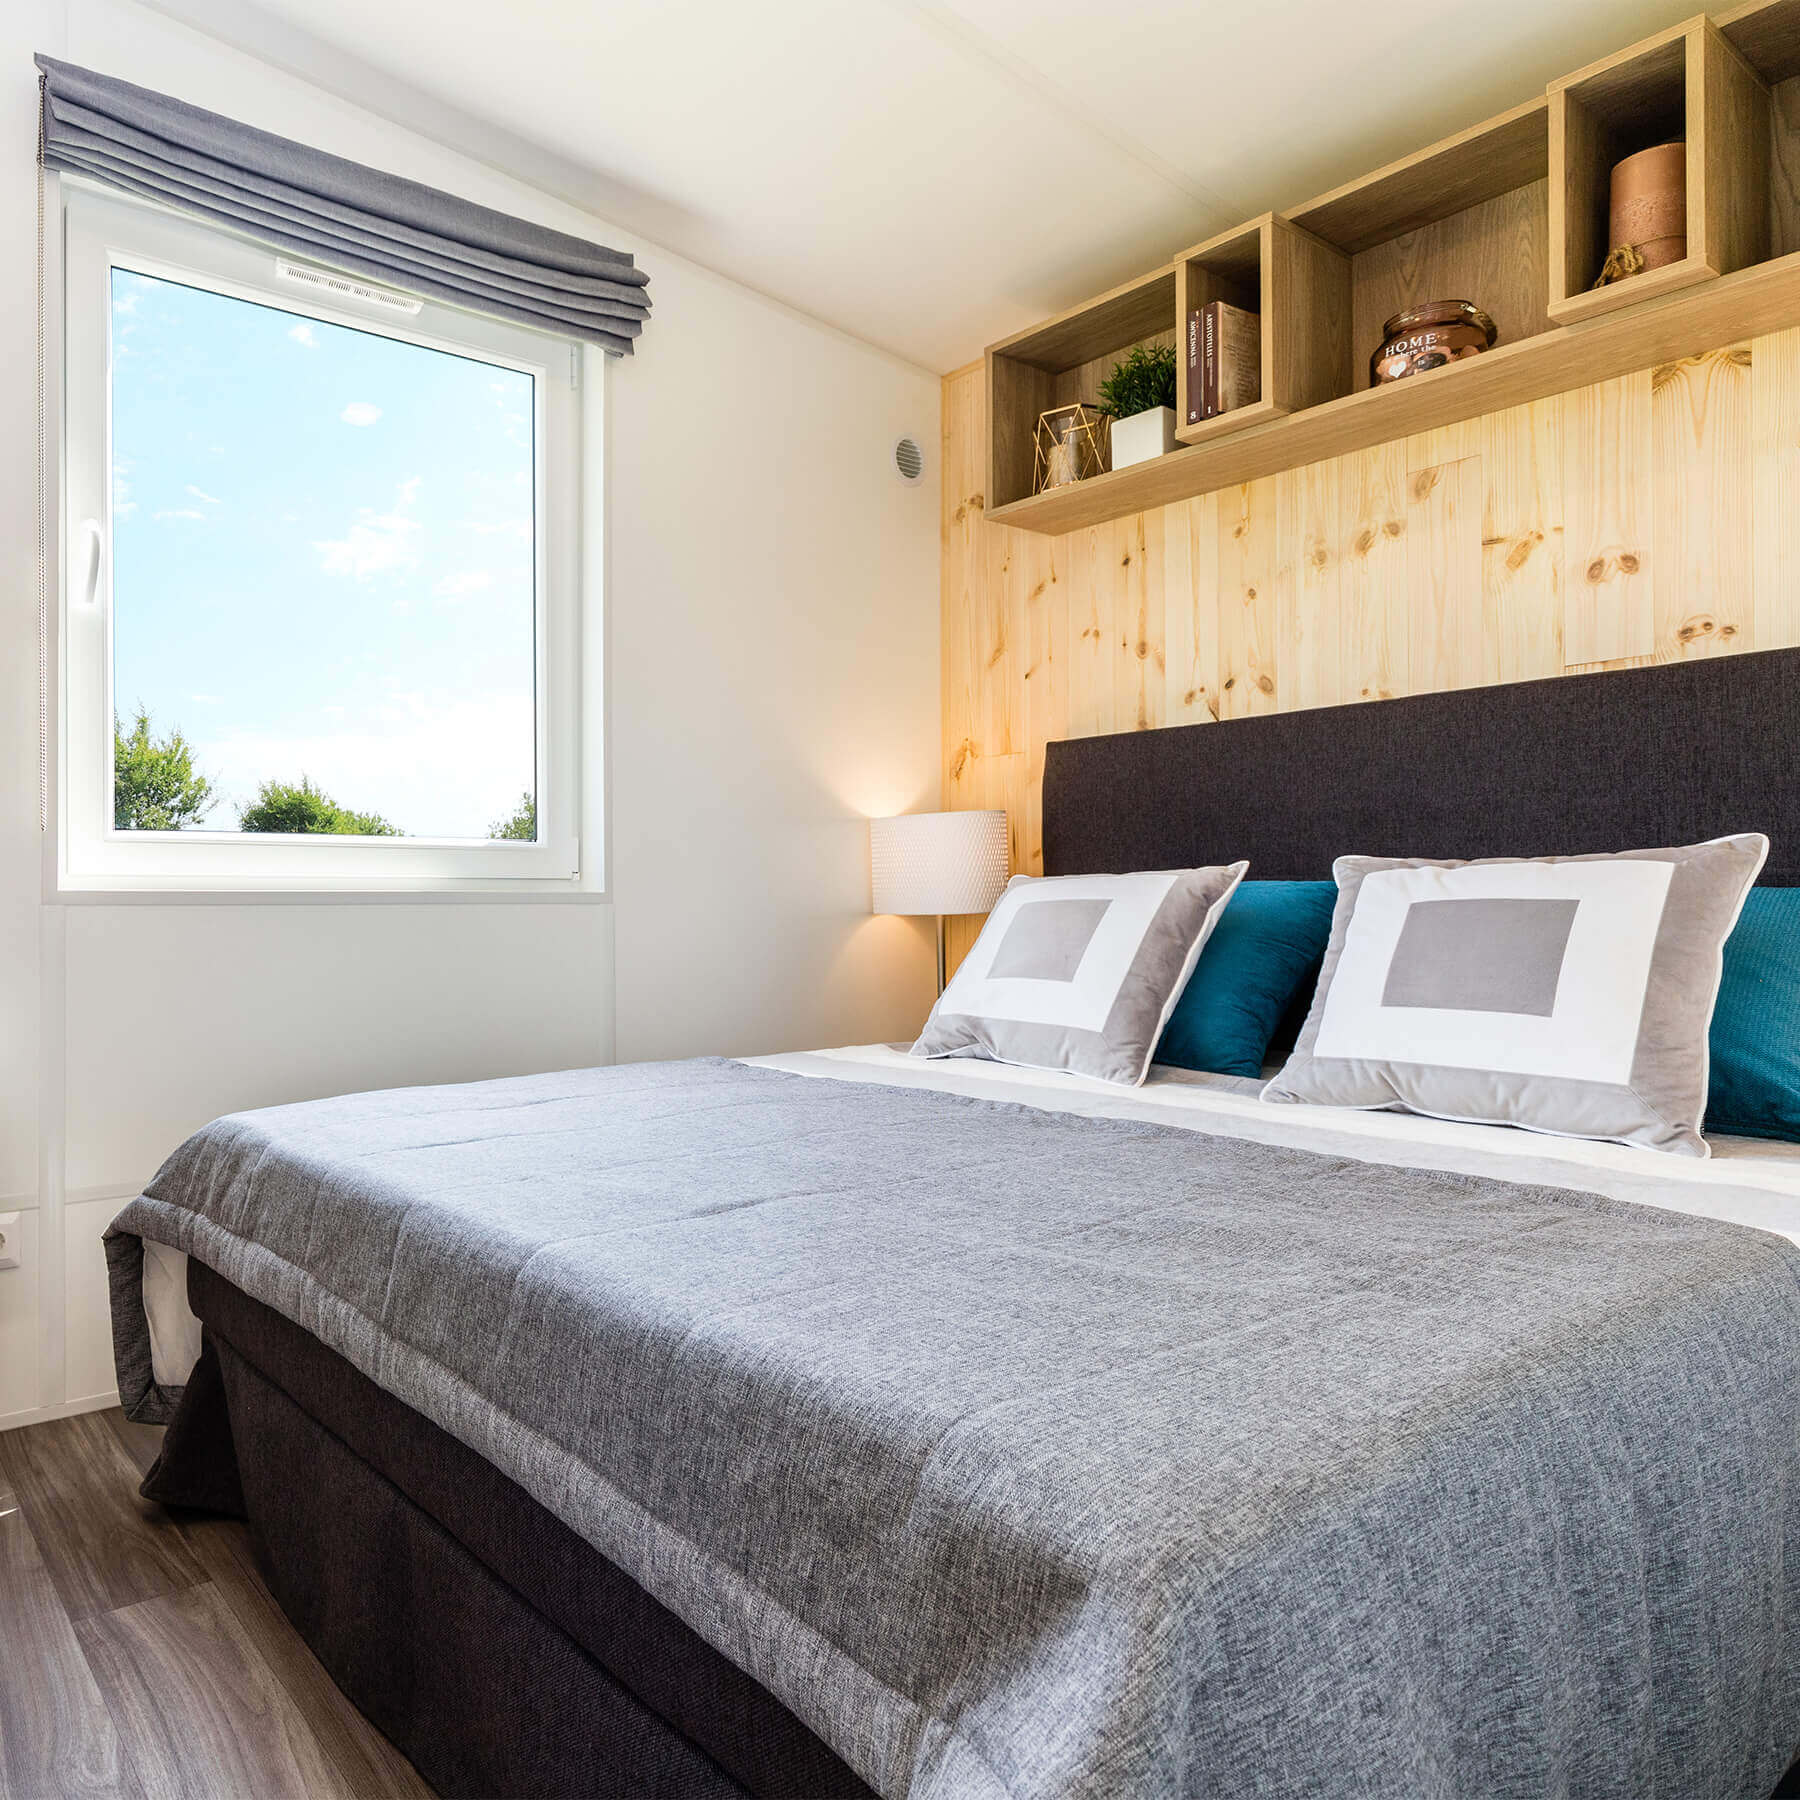 Komfortabel eingerichteter Schlafbereich mit Bett, Nachttisch, Hängeregal und Raffrollo am Fenster